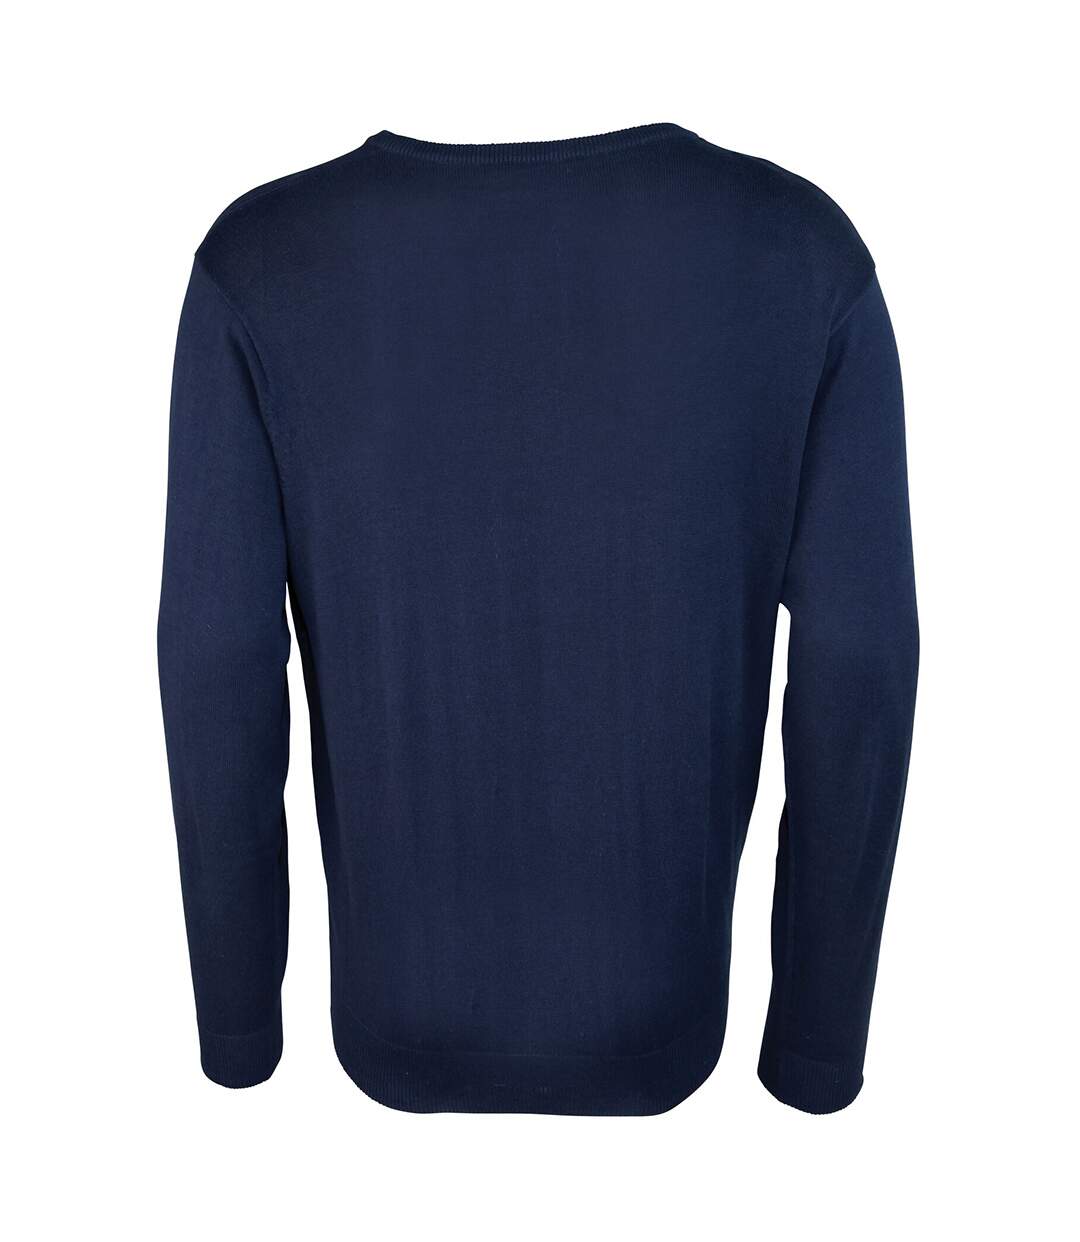 Premier Mens V-Neck Knitted Sweater (Navy) - UTRW1131